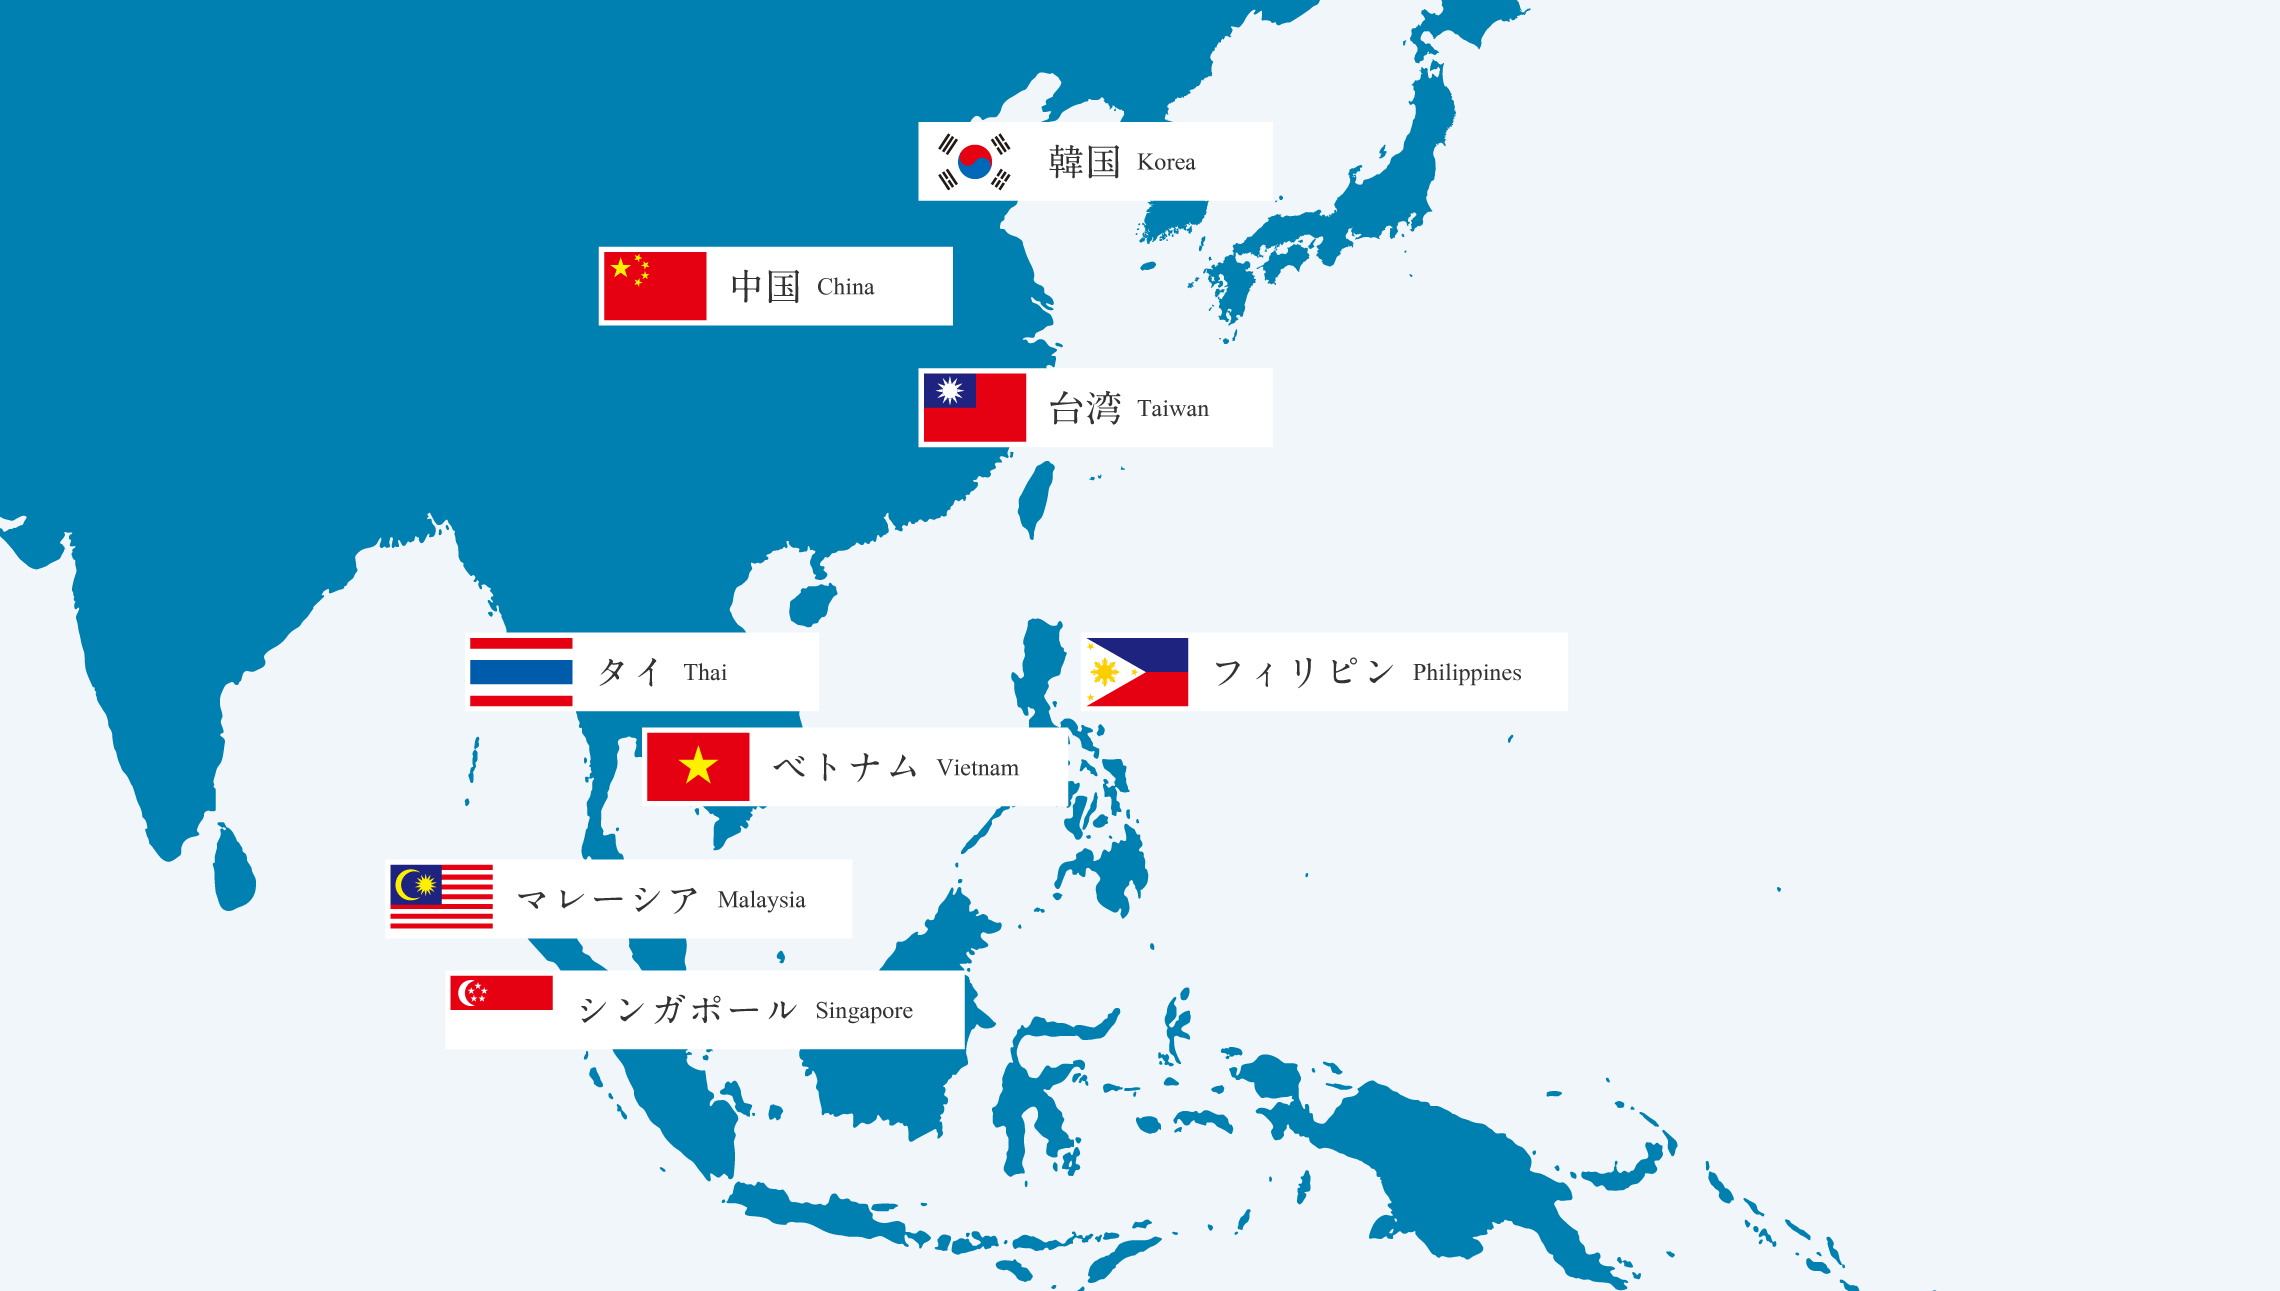 韓国 中国 台湾 タイ ベトナム フィリピン マレーシア シンガポール